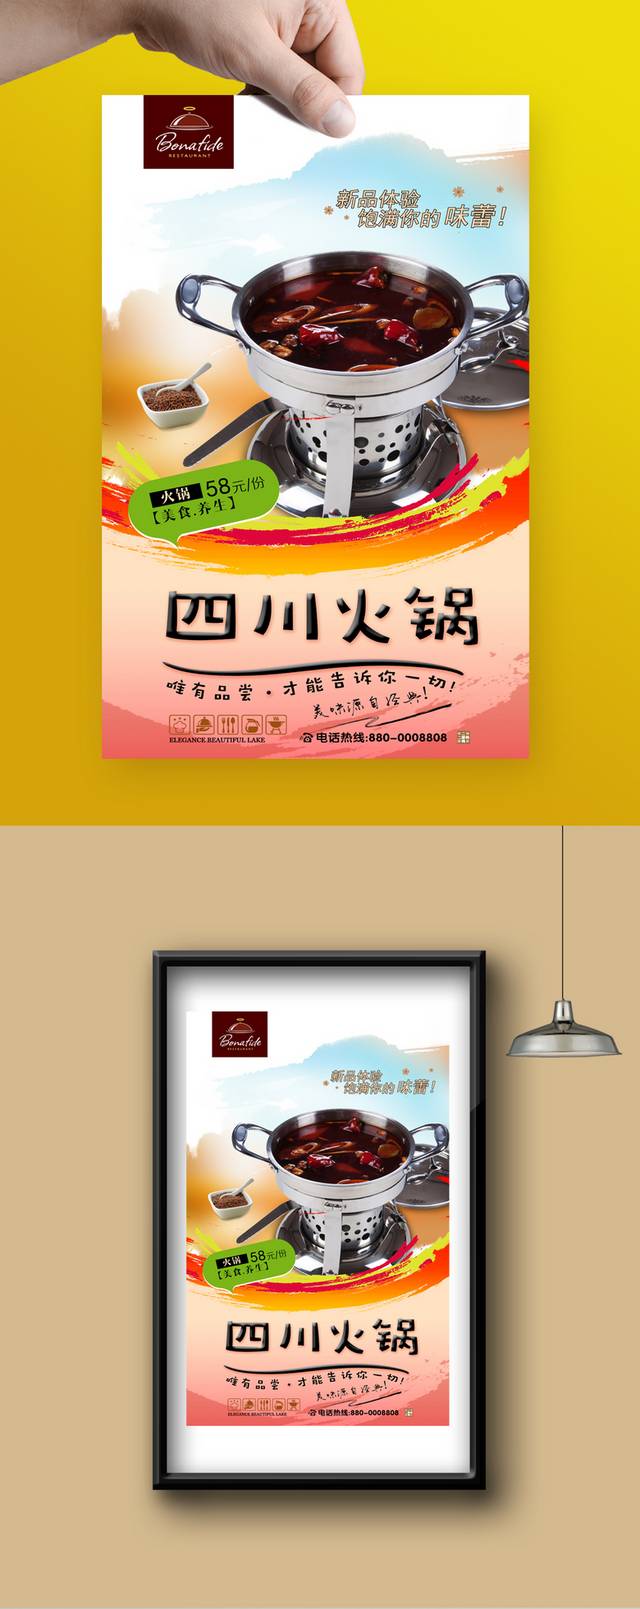 餐饮四川火锅美食广告海报